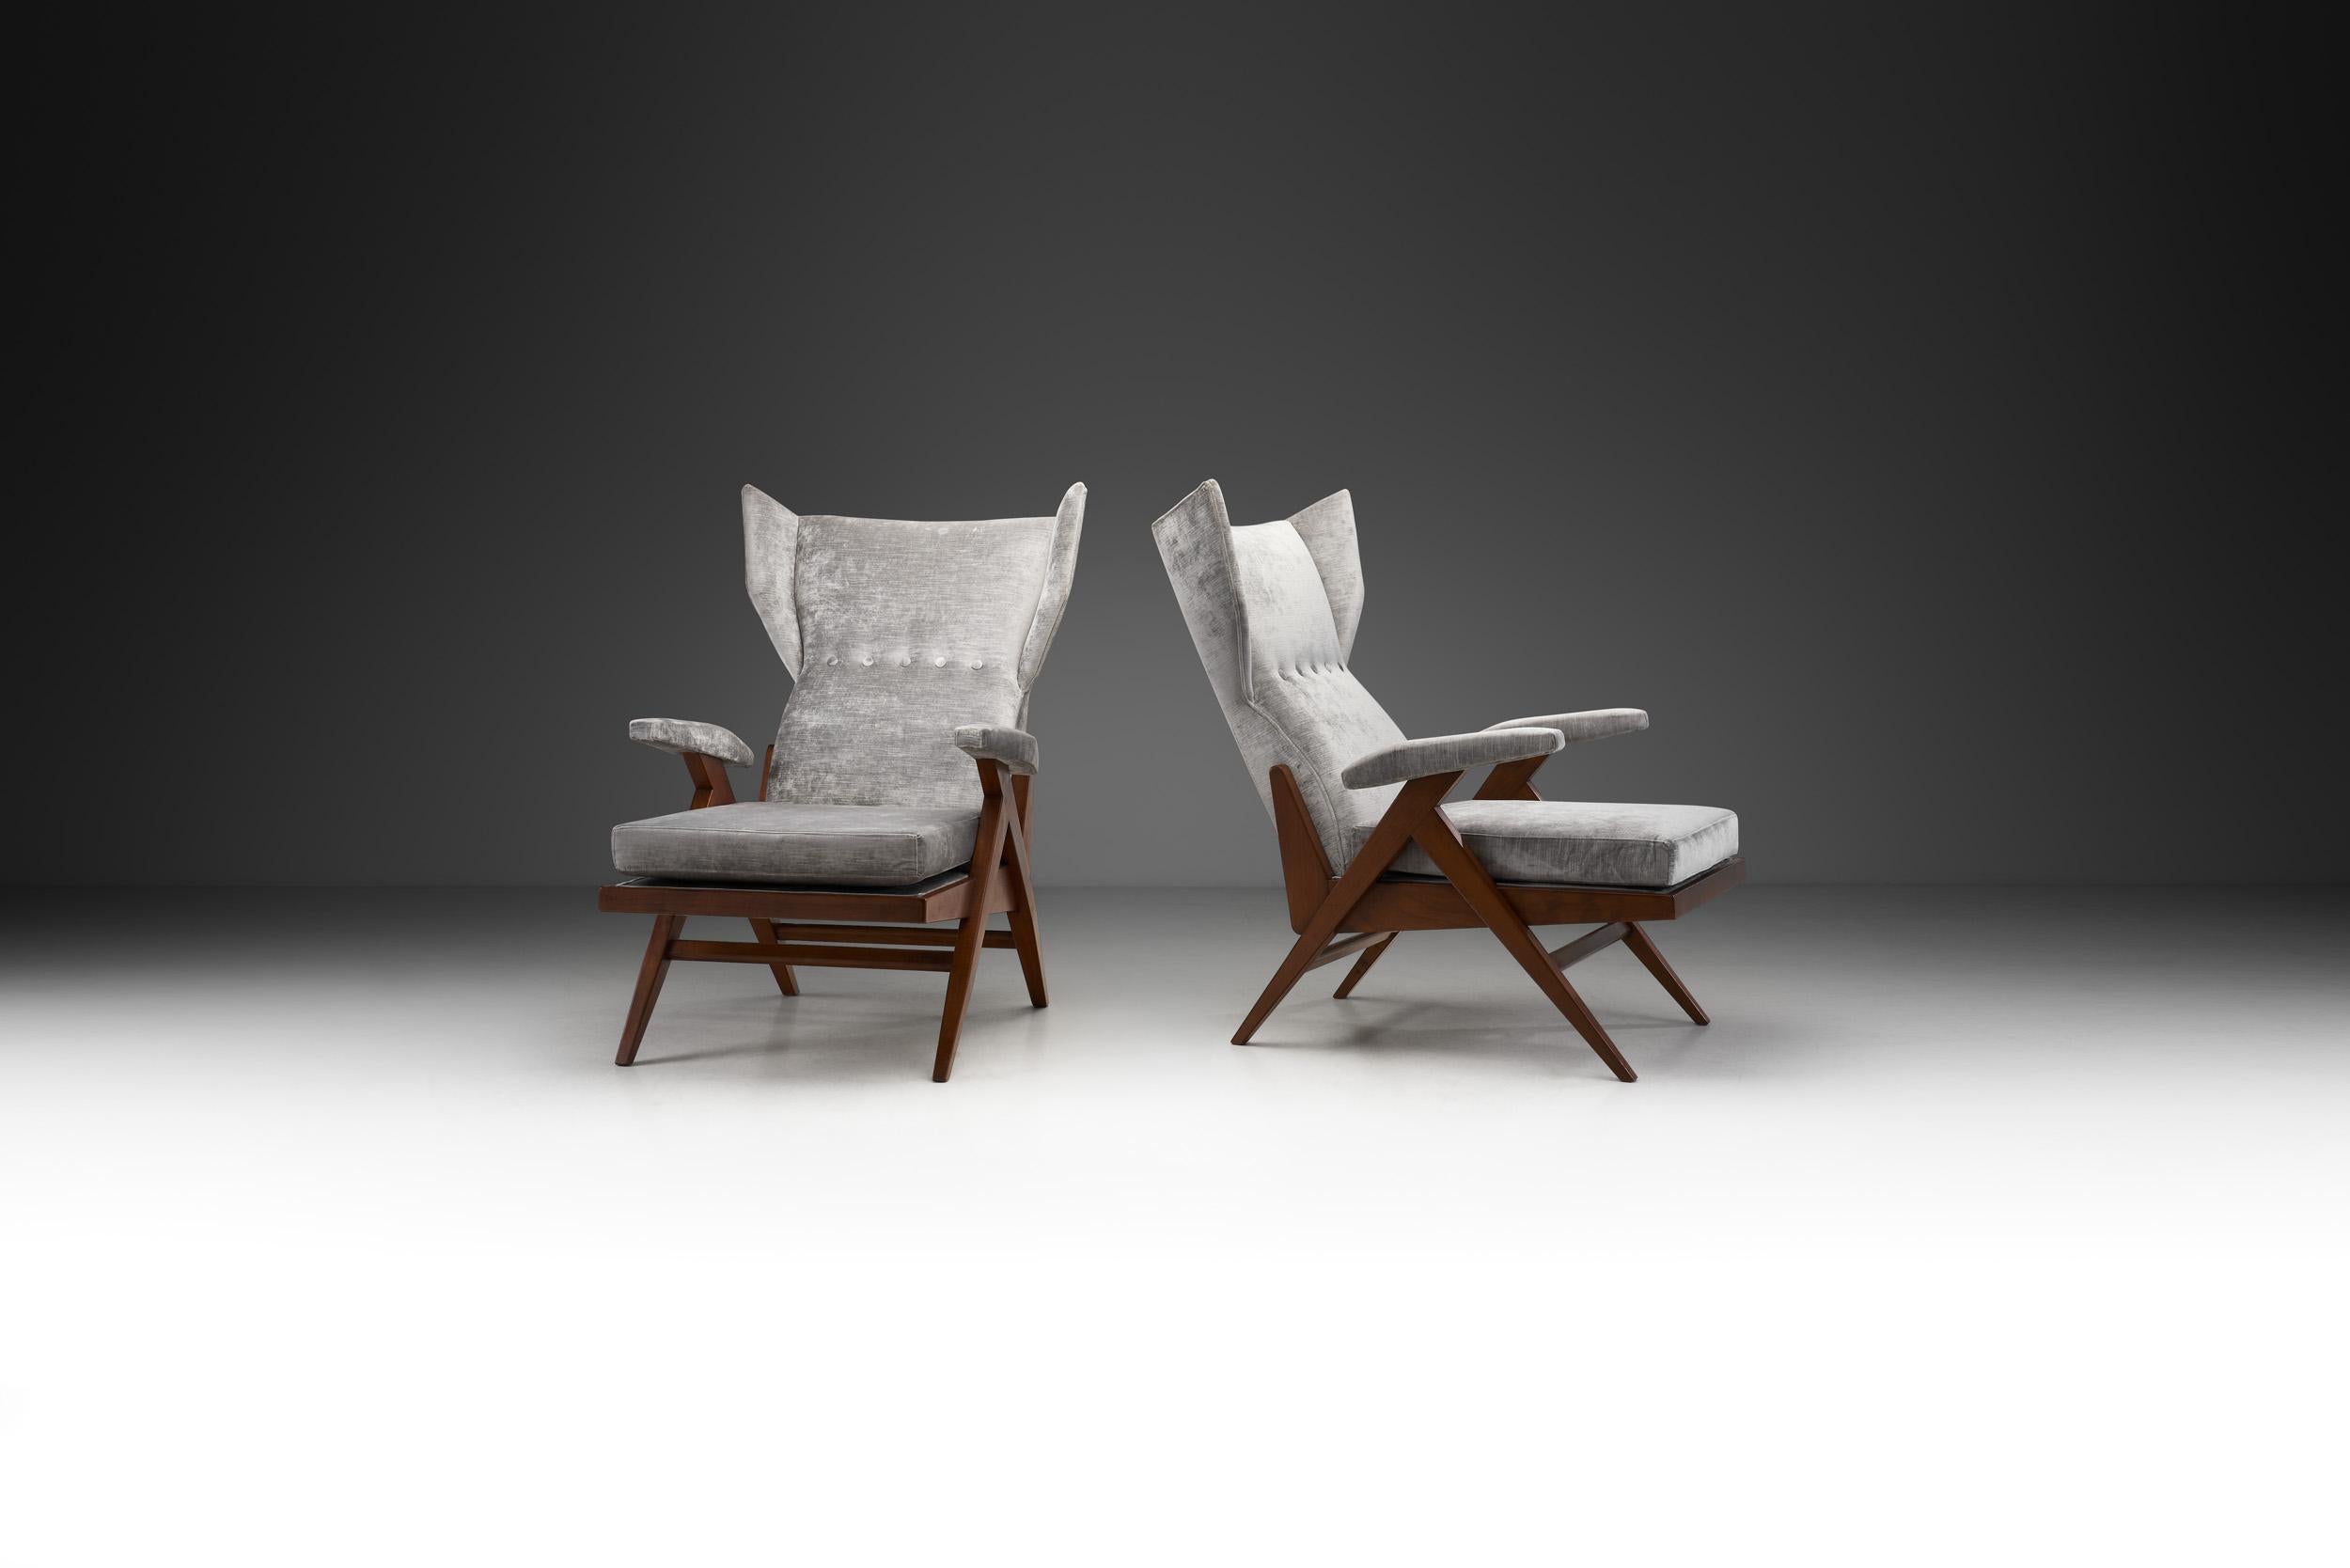 Dans les années 1950, de brillants designers italiens se sont efforcés de créer des meubles de la plus haute qualité en explorant des formes véritablement modernes. Ces designers ont expérimenté de nouveaux matériaux et de nouvelles méthodes de